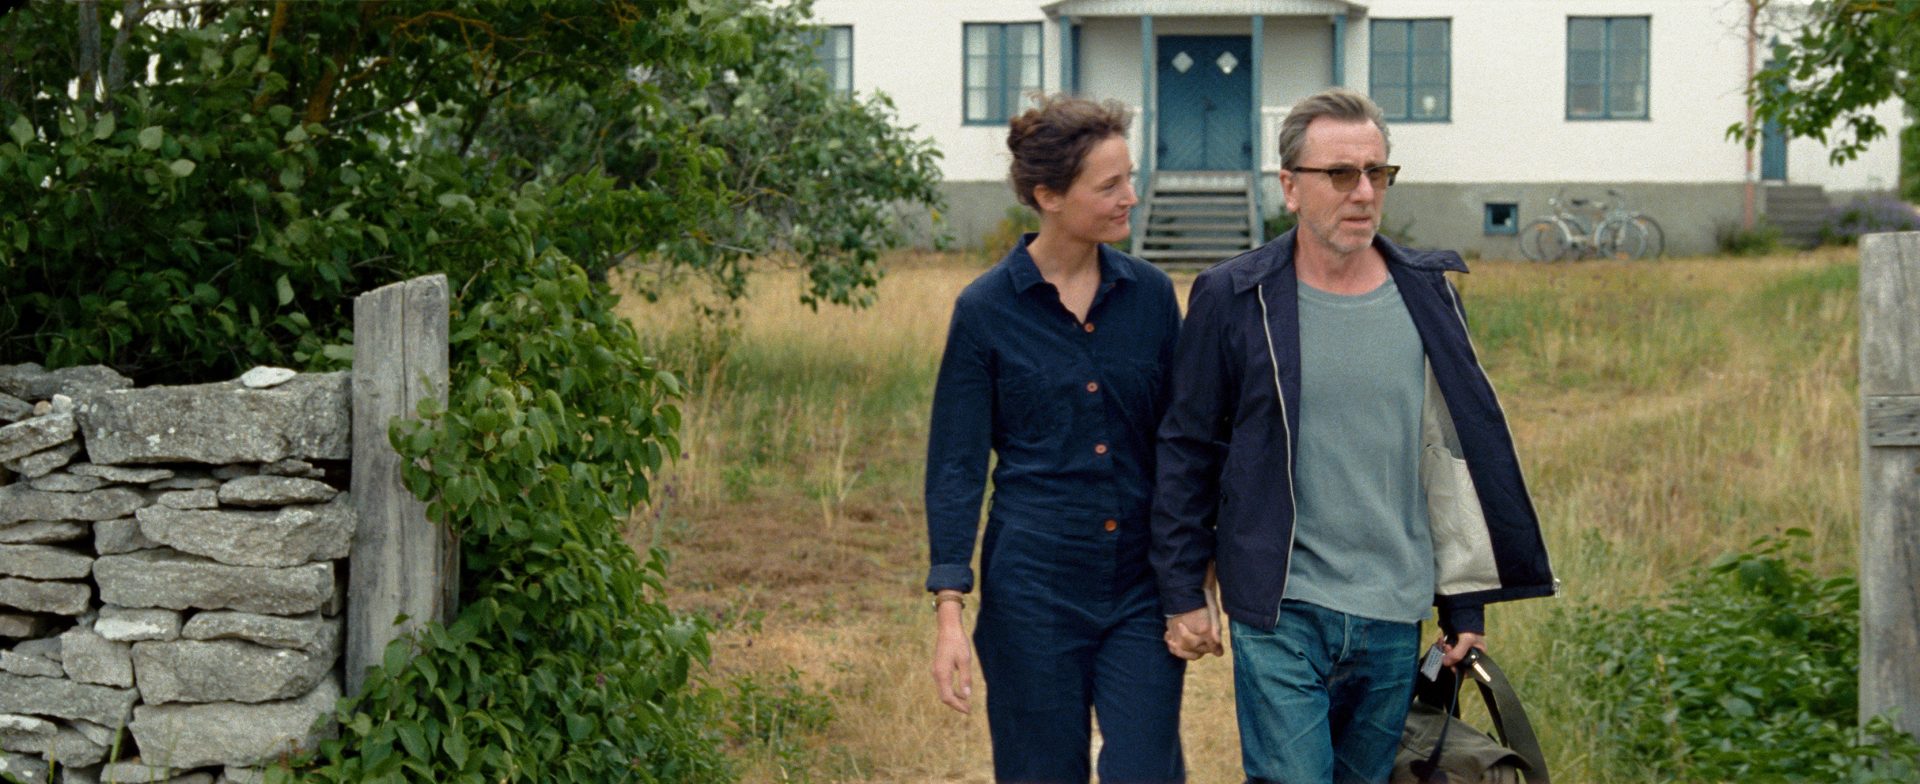 „Bergmanovo ostrvo“ - priča o braku inspirisana čuvenim Ingmarom Bergmanom u bioskopima